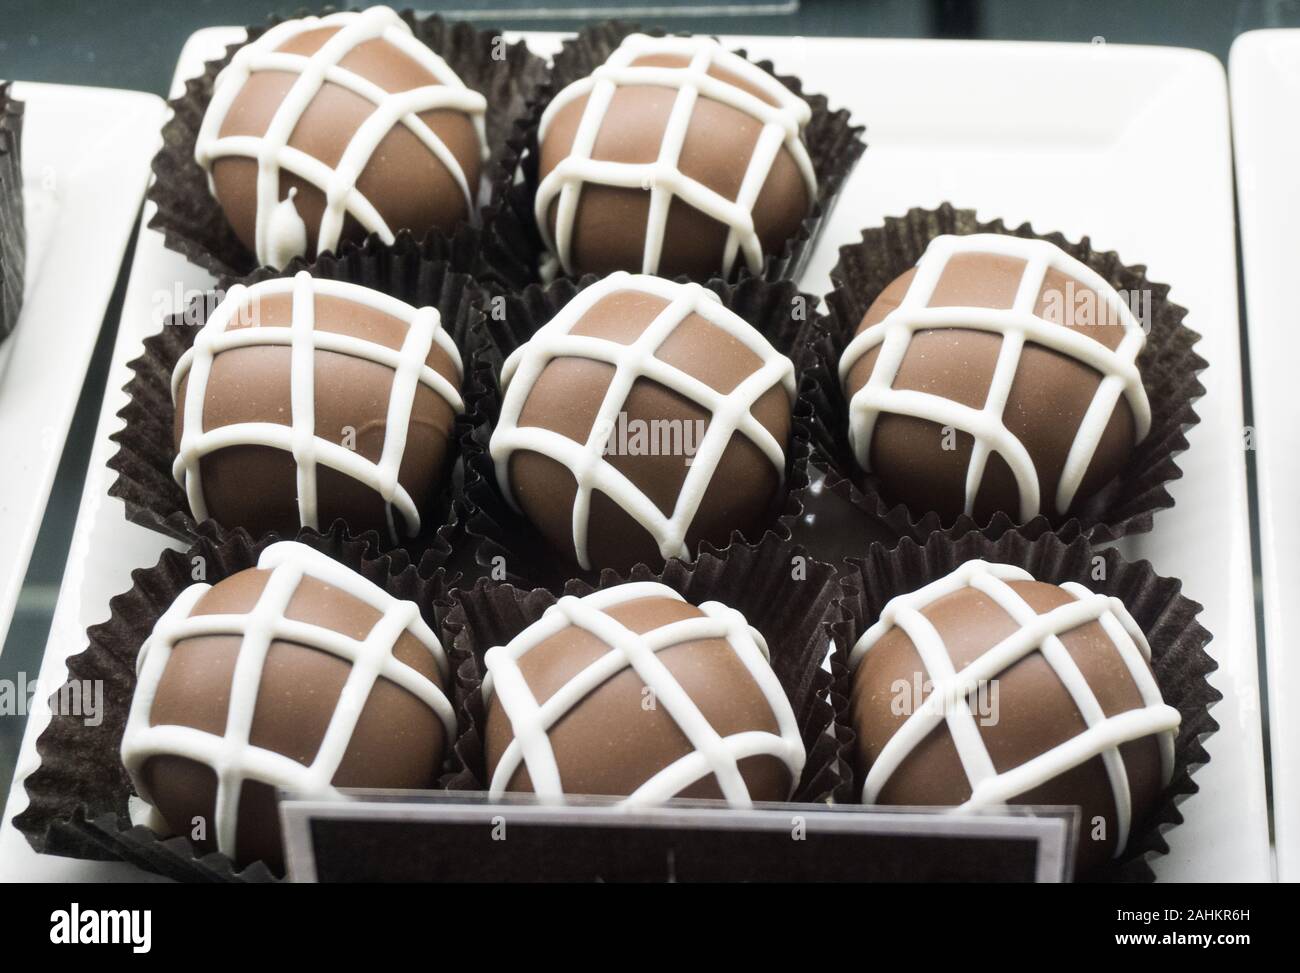 Ricco di dolci al cioccolato sul display in Seattle Foto Stock